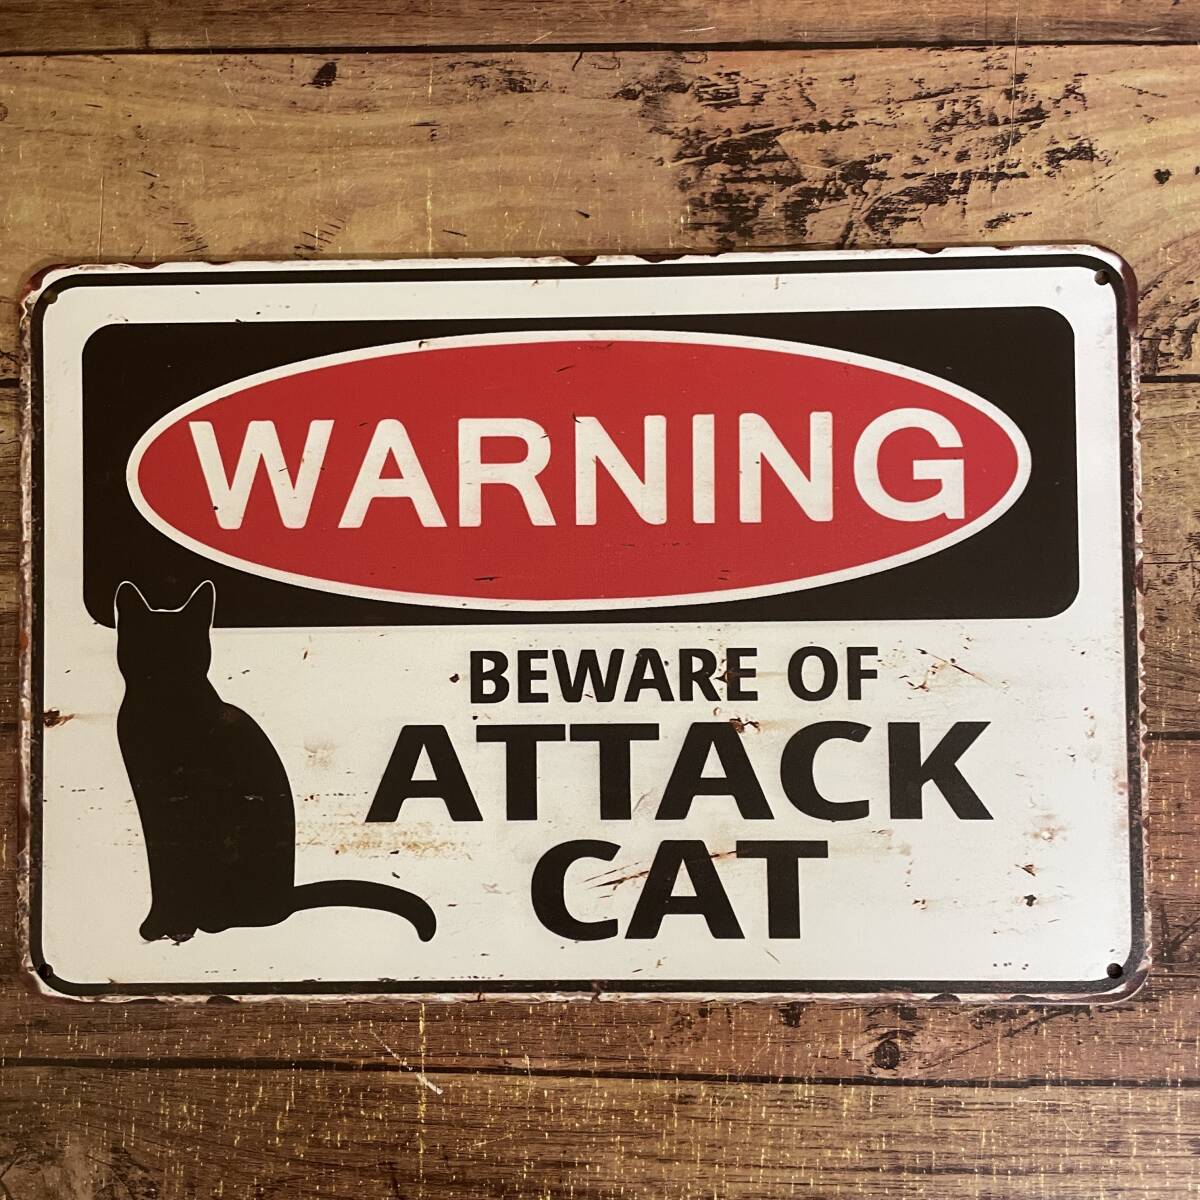 2枚セット おもしろブリキ看板 猫の攻撃に注意 かわいい ねこ ネコ 金属パネル壁飾り インテリア 壁掛けプレート 警告版 防犯対策 送料無料